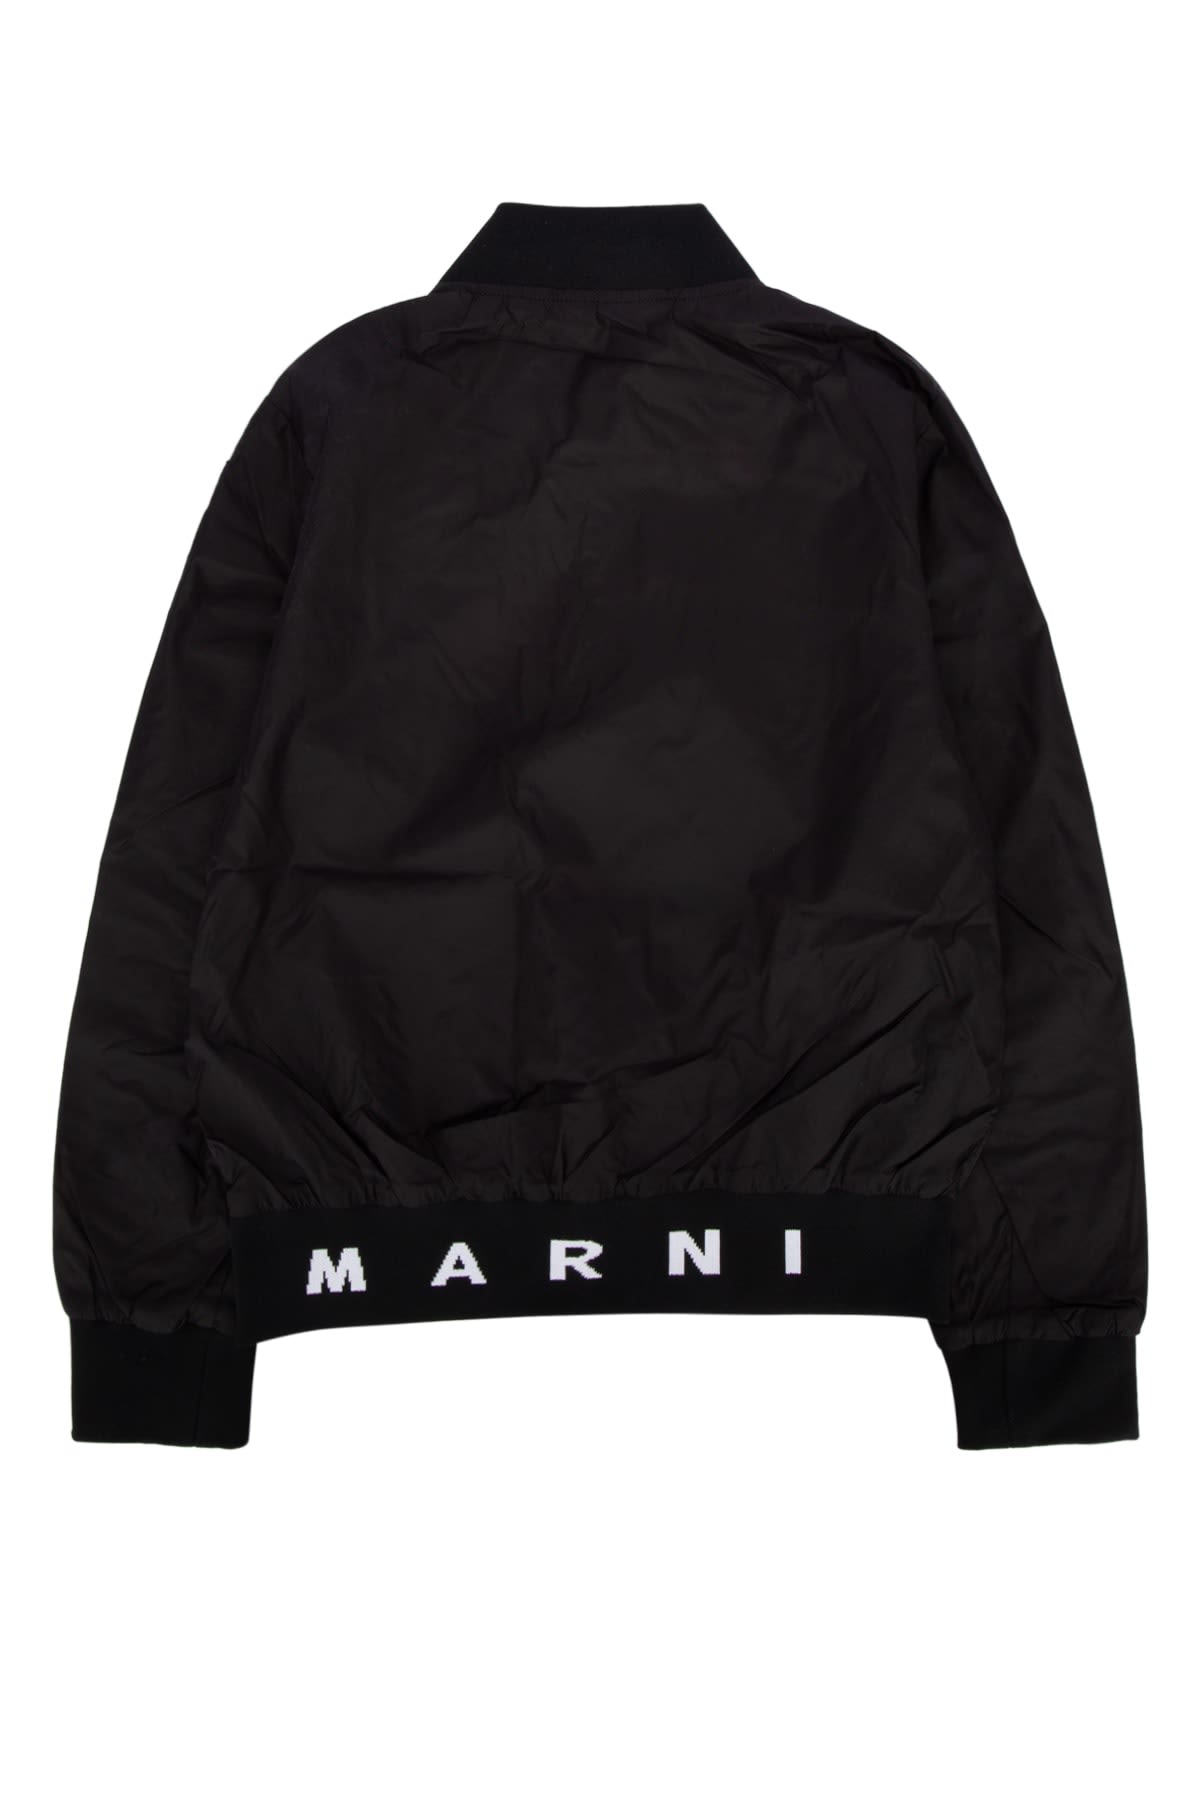 Marni Kids' T-shirt In 0m900